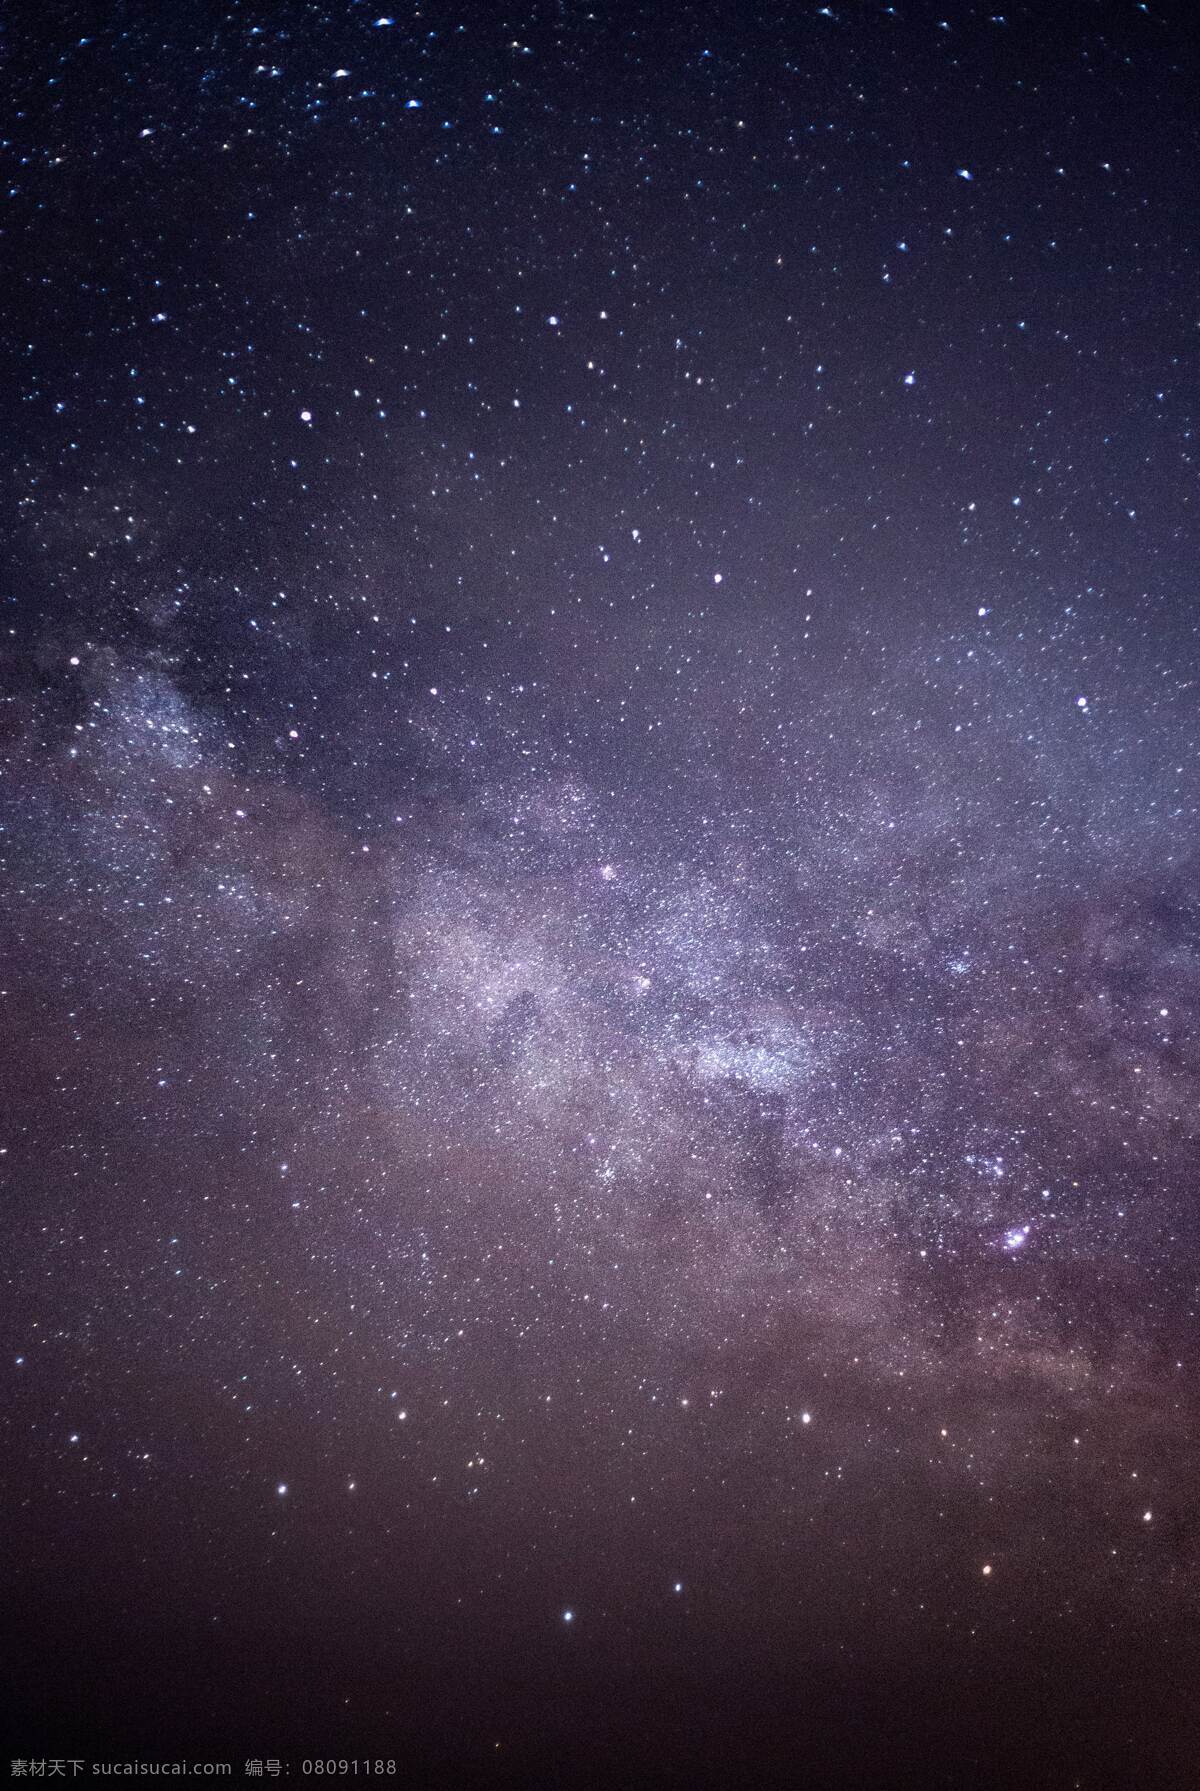 银河之夜 银河 星星 紫色 天空 背景 旅游摄影 国外旅游